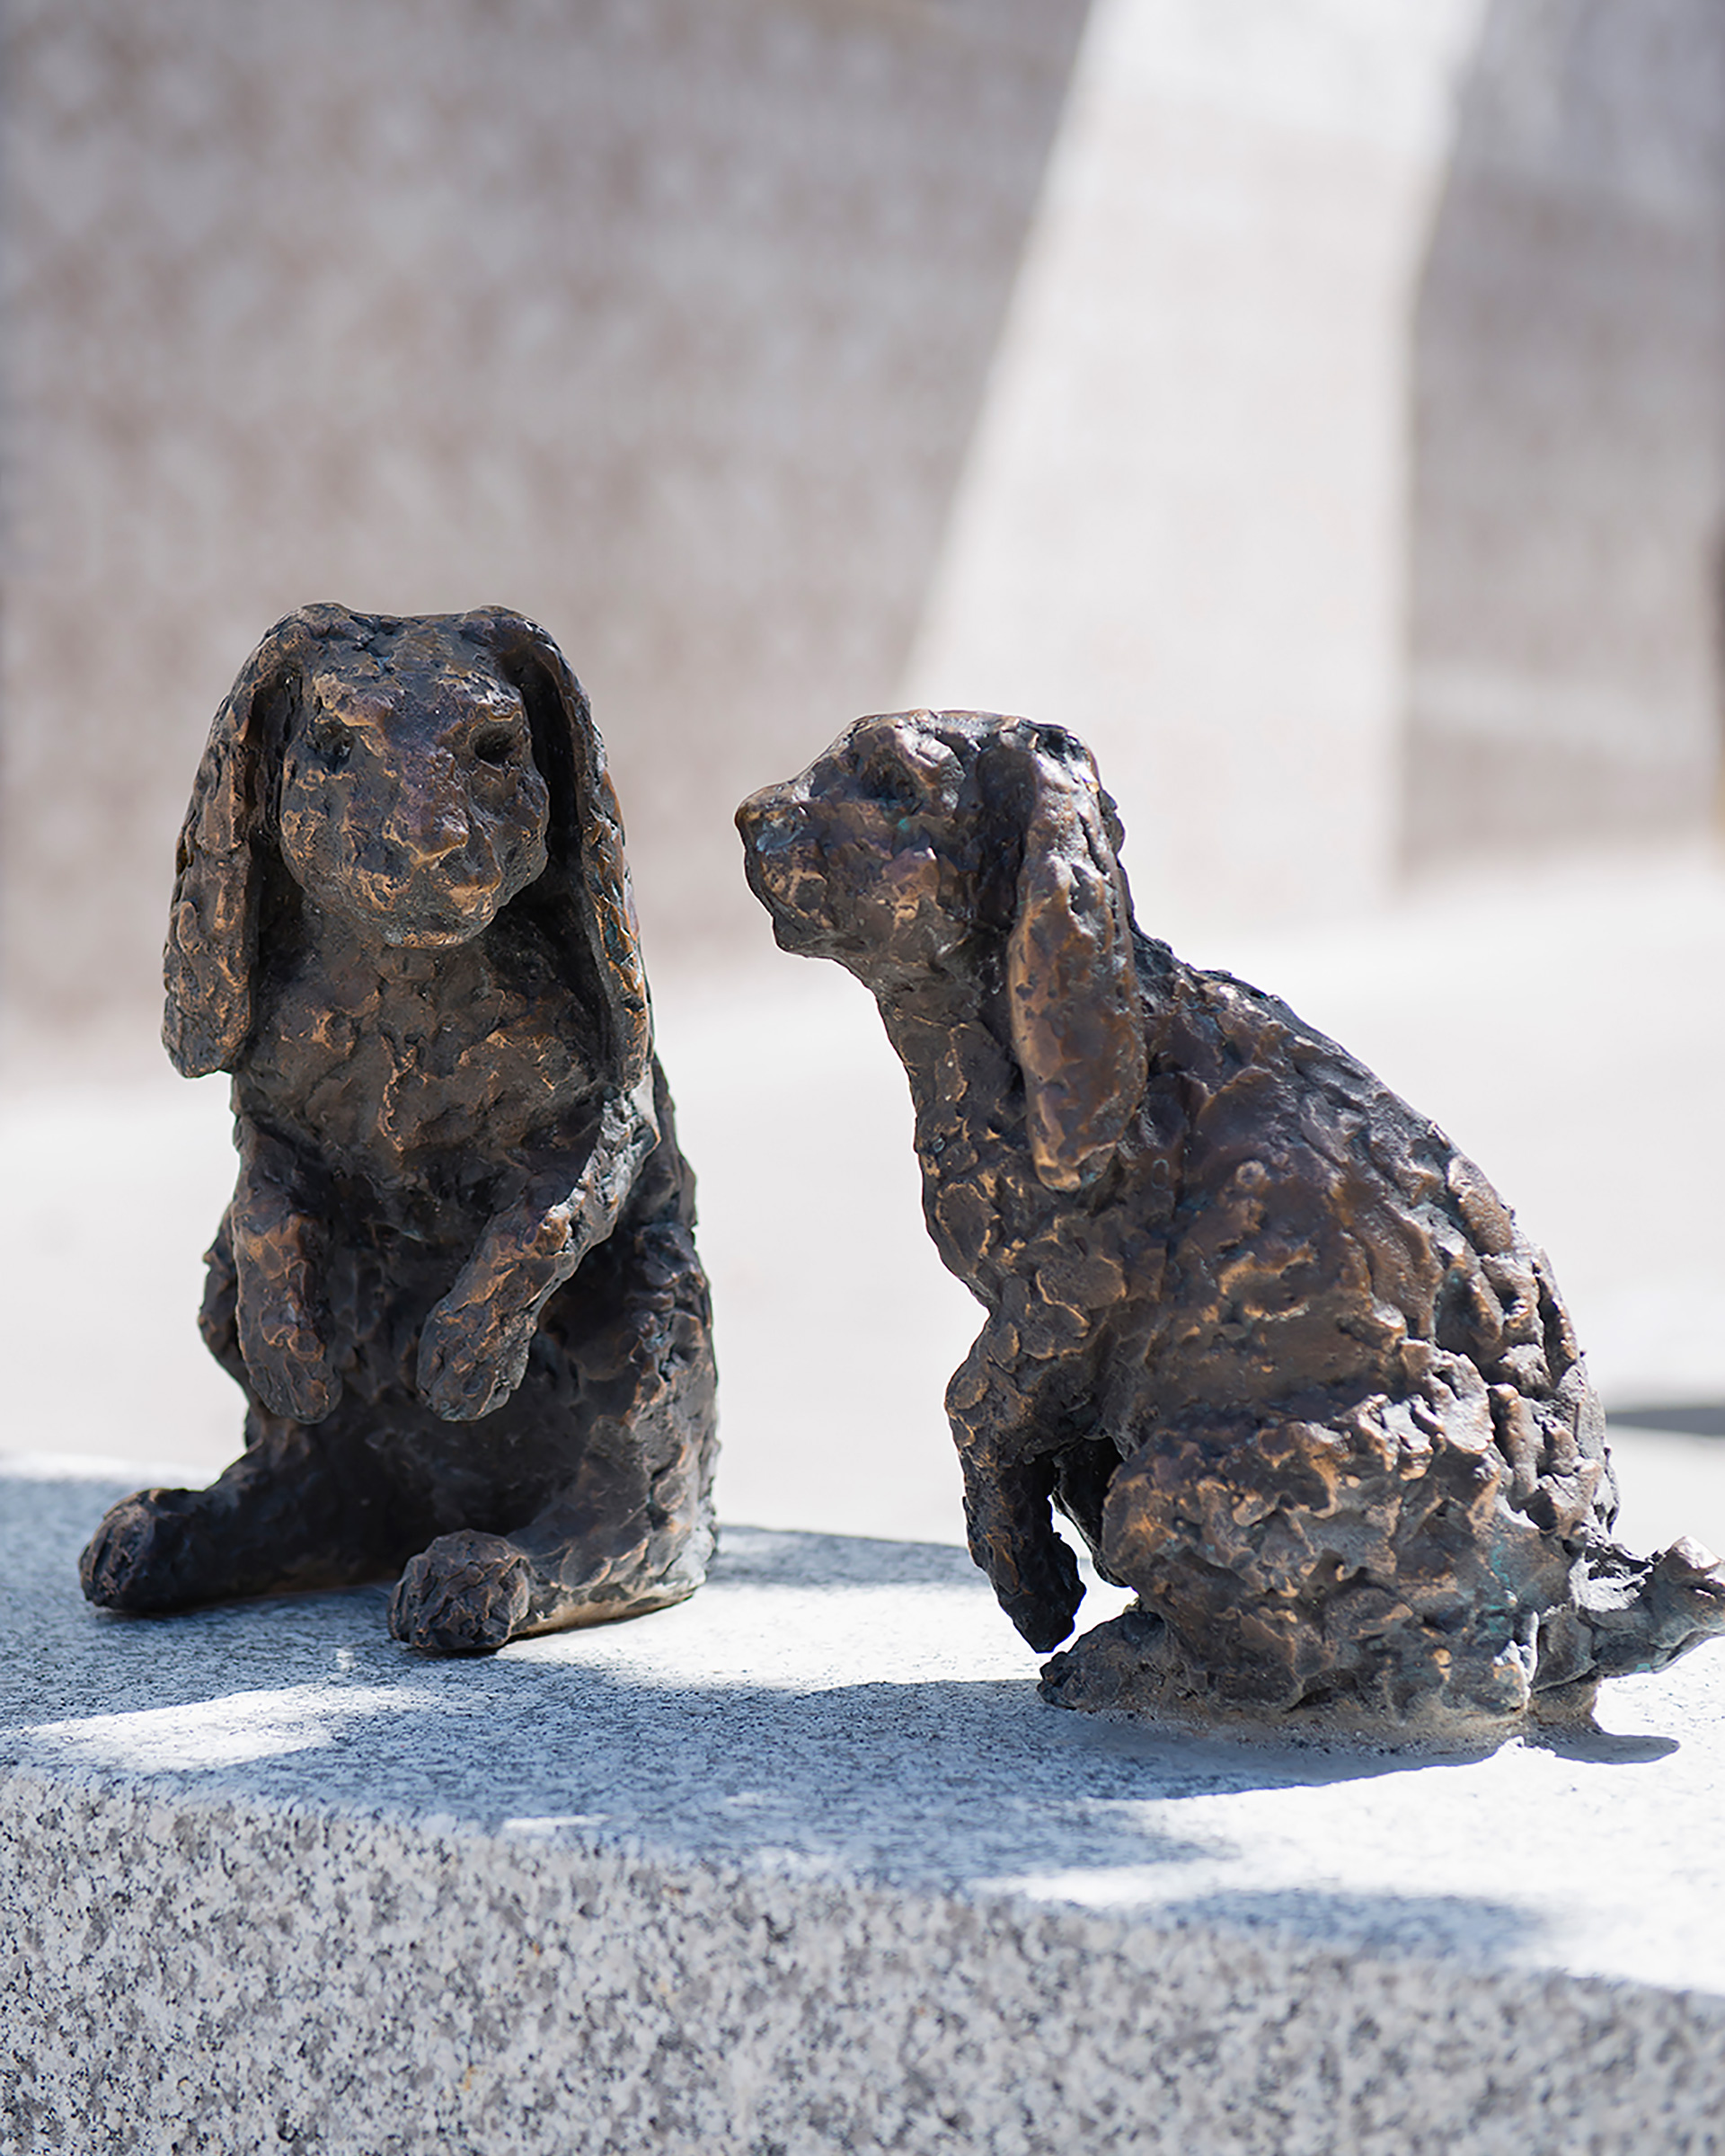 Skulptur med två kaniner i brons som sitter på en grå sten.